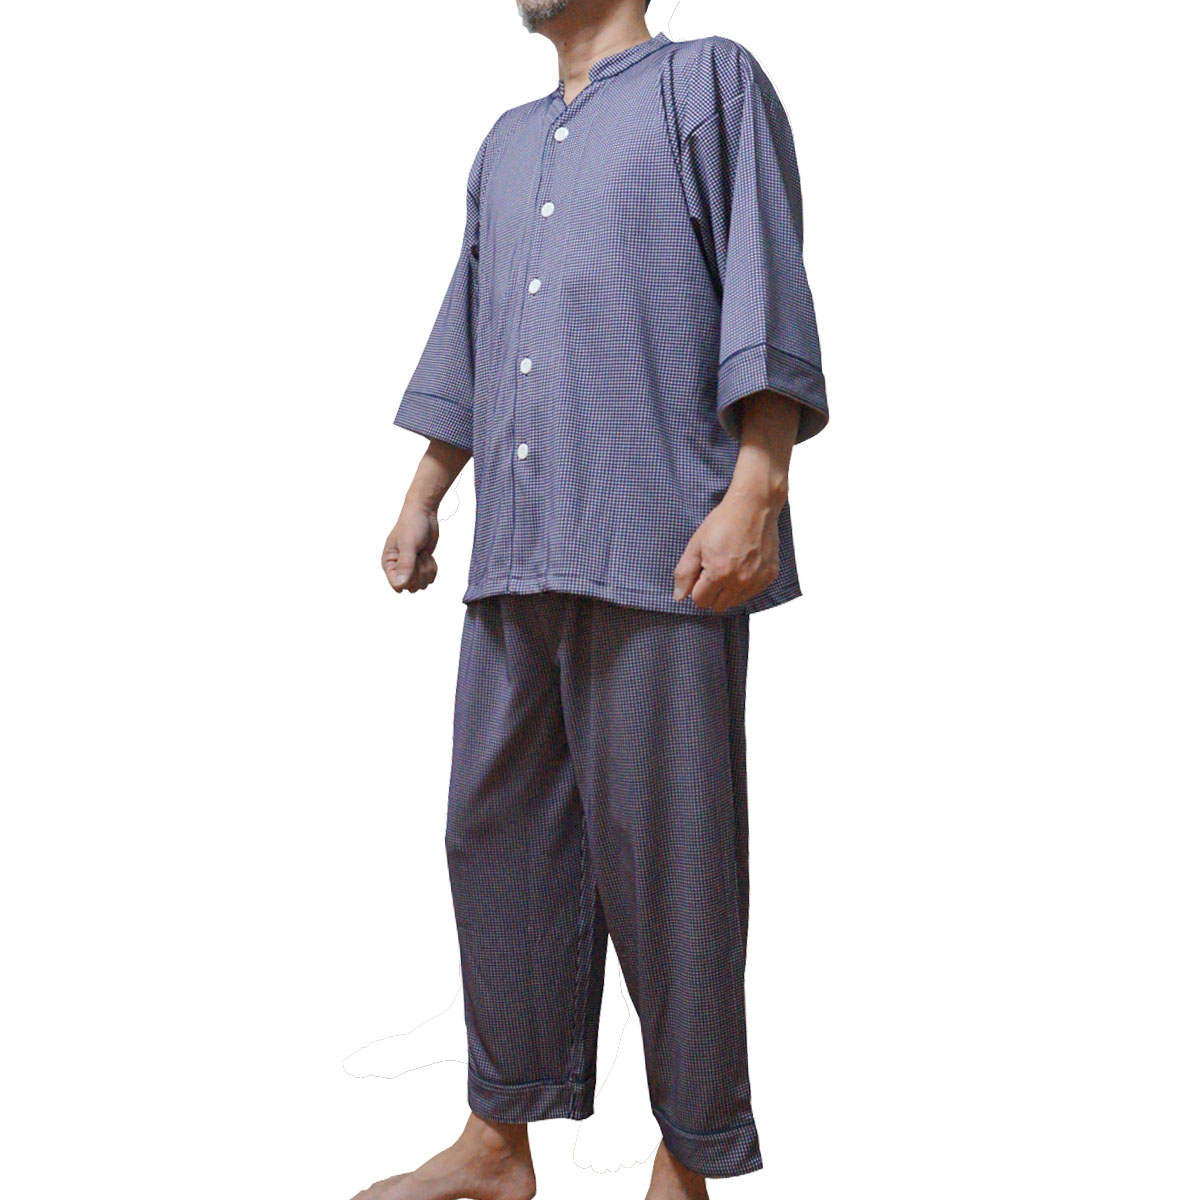 パジャマ業務用 三露産業 ワッフル編みカットソー ネイビー レッド ボタン開きパジャマ 上下セット 大人用フリーサイズ